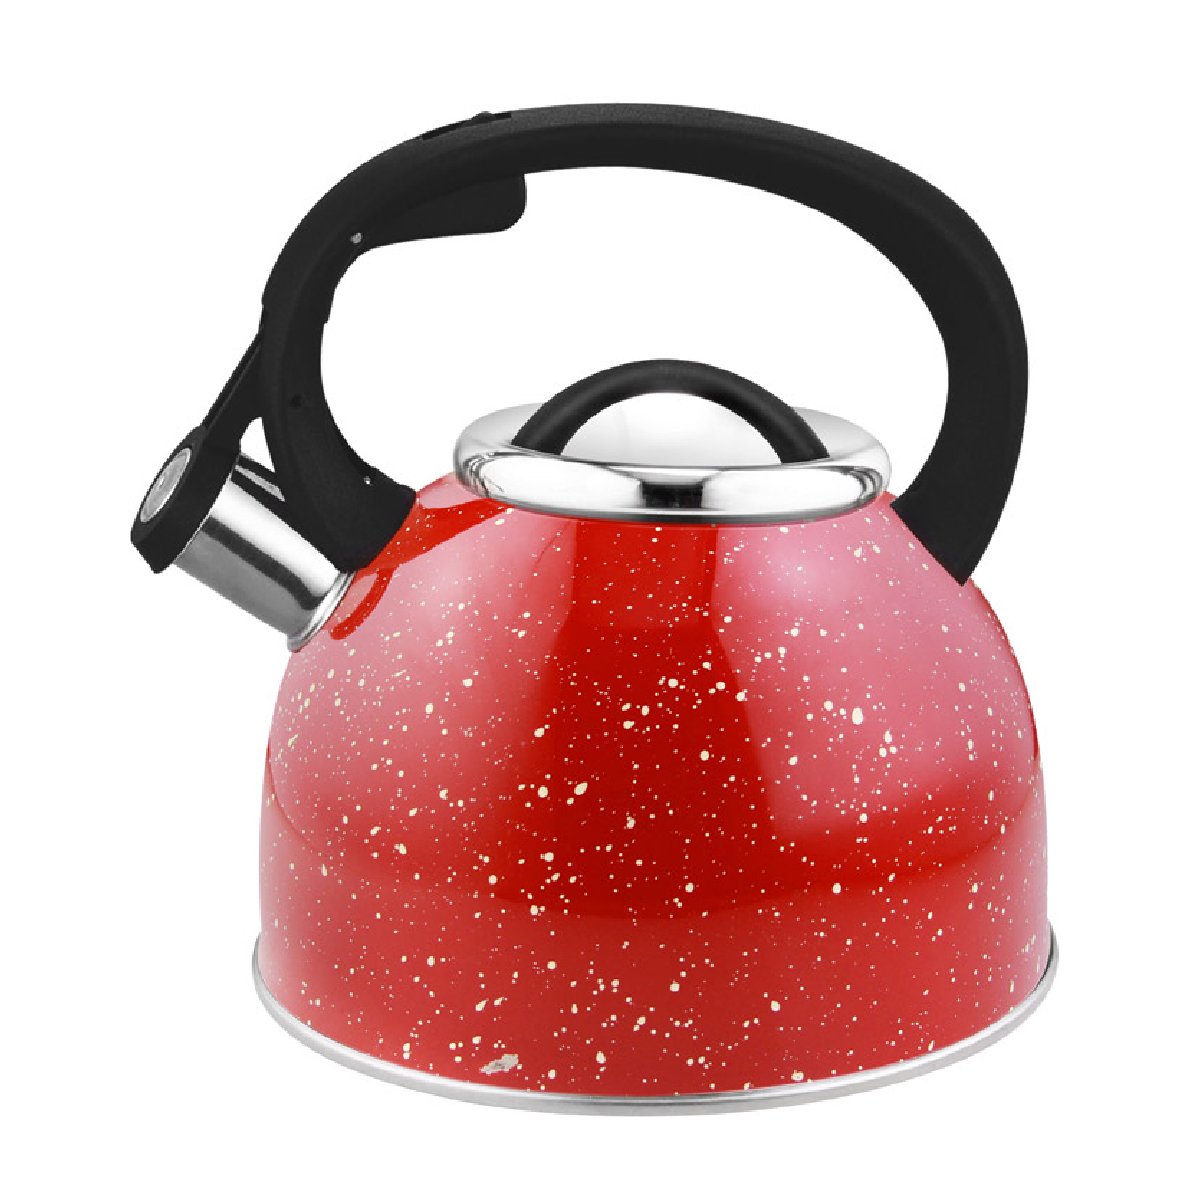 Чайник из нержавеющей стали со свистком Arte (красный с белыми точками) 2,5 л (005174)